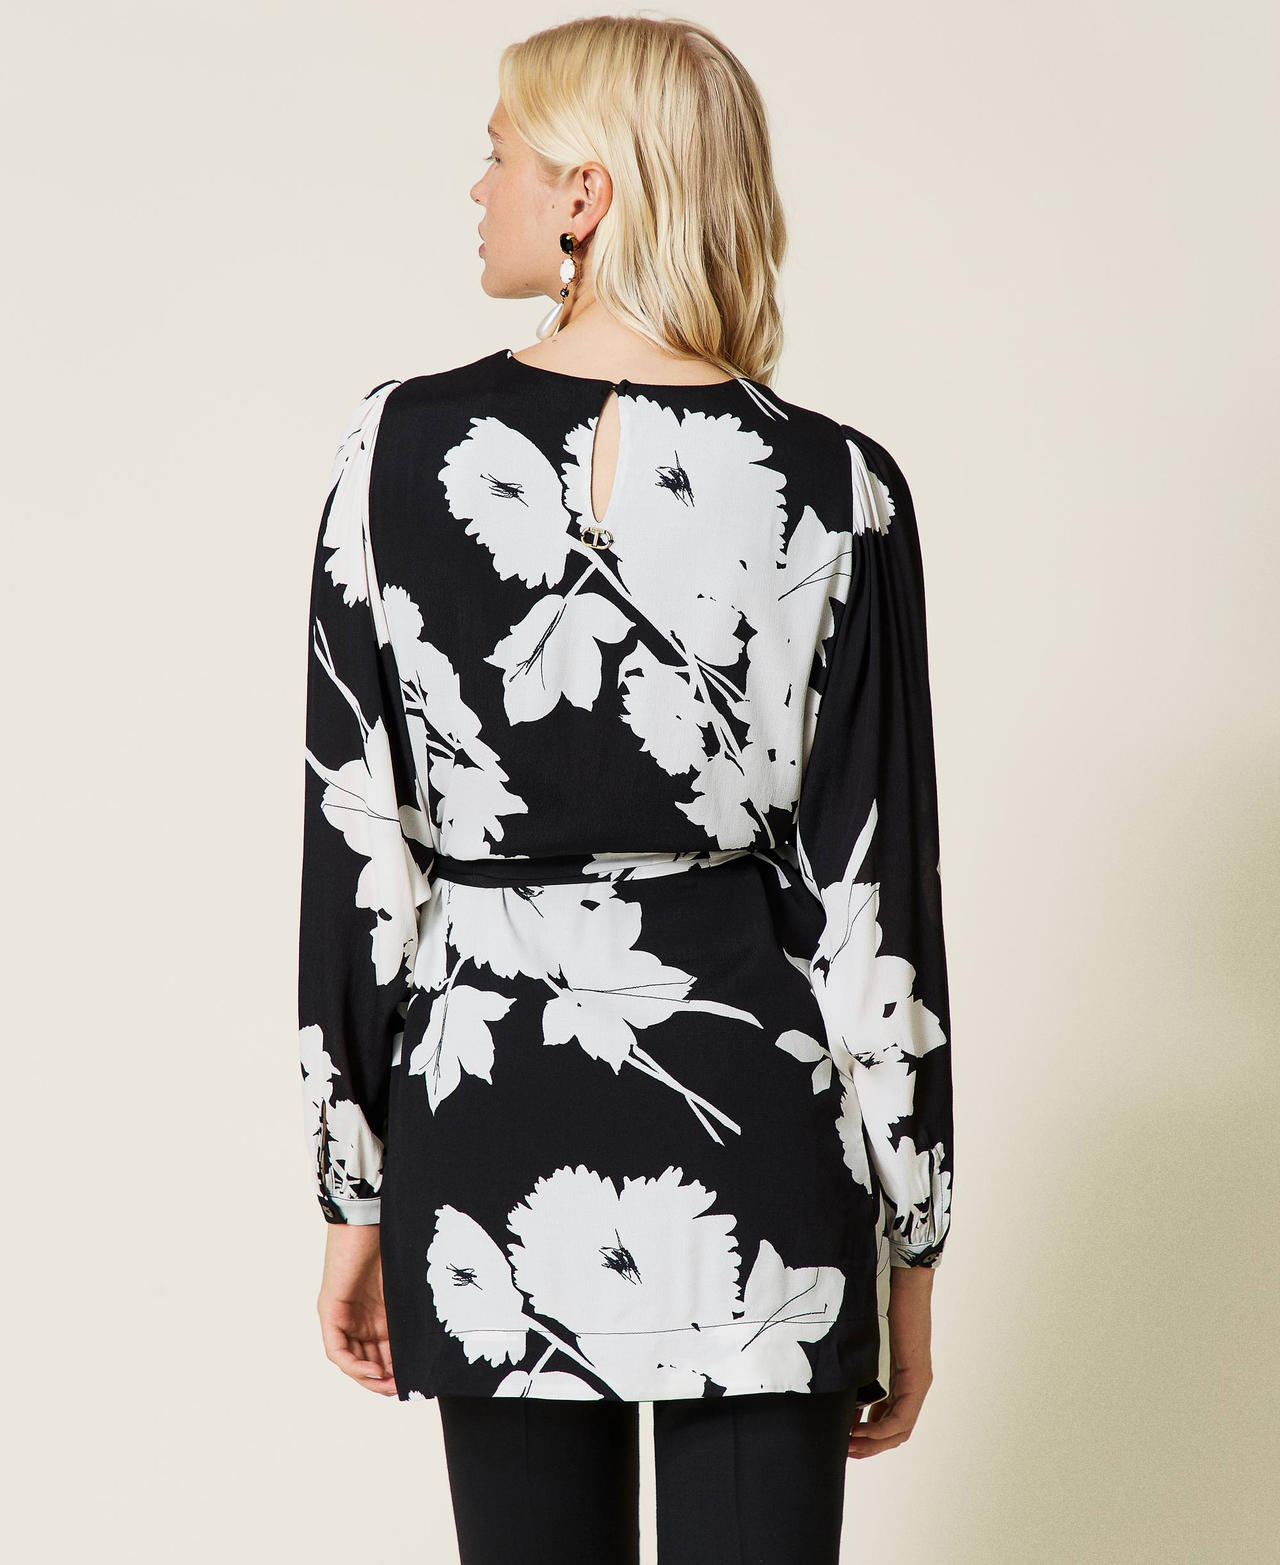 Robe tunique en crêpe avec imprimé floral Imprimé Fleurs Blanc « Neige » / Noir Femme 212TP2637-03